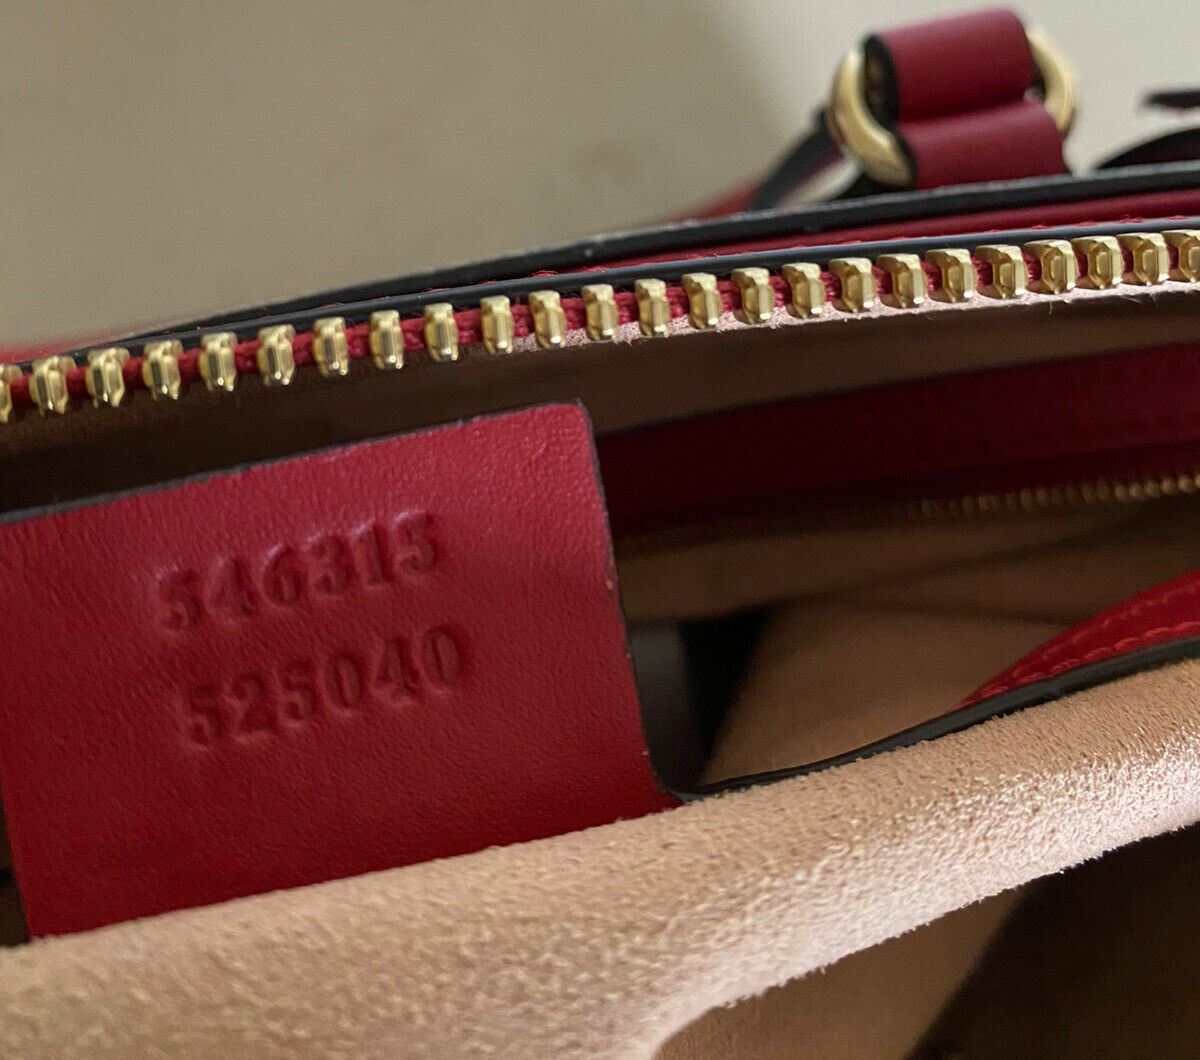 Новая женская большая кожаная сумка Gucci GG Monogram за 2850 долларов, красная/синяя 546315